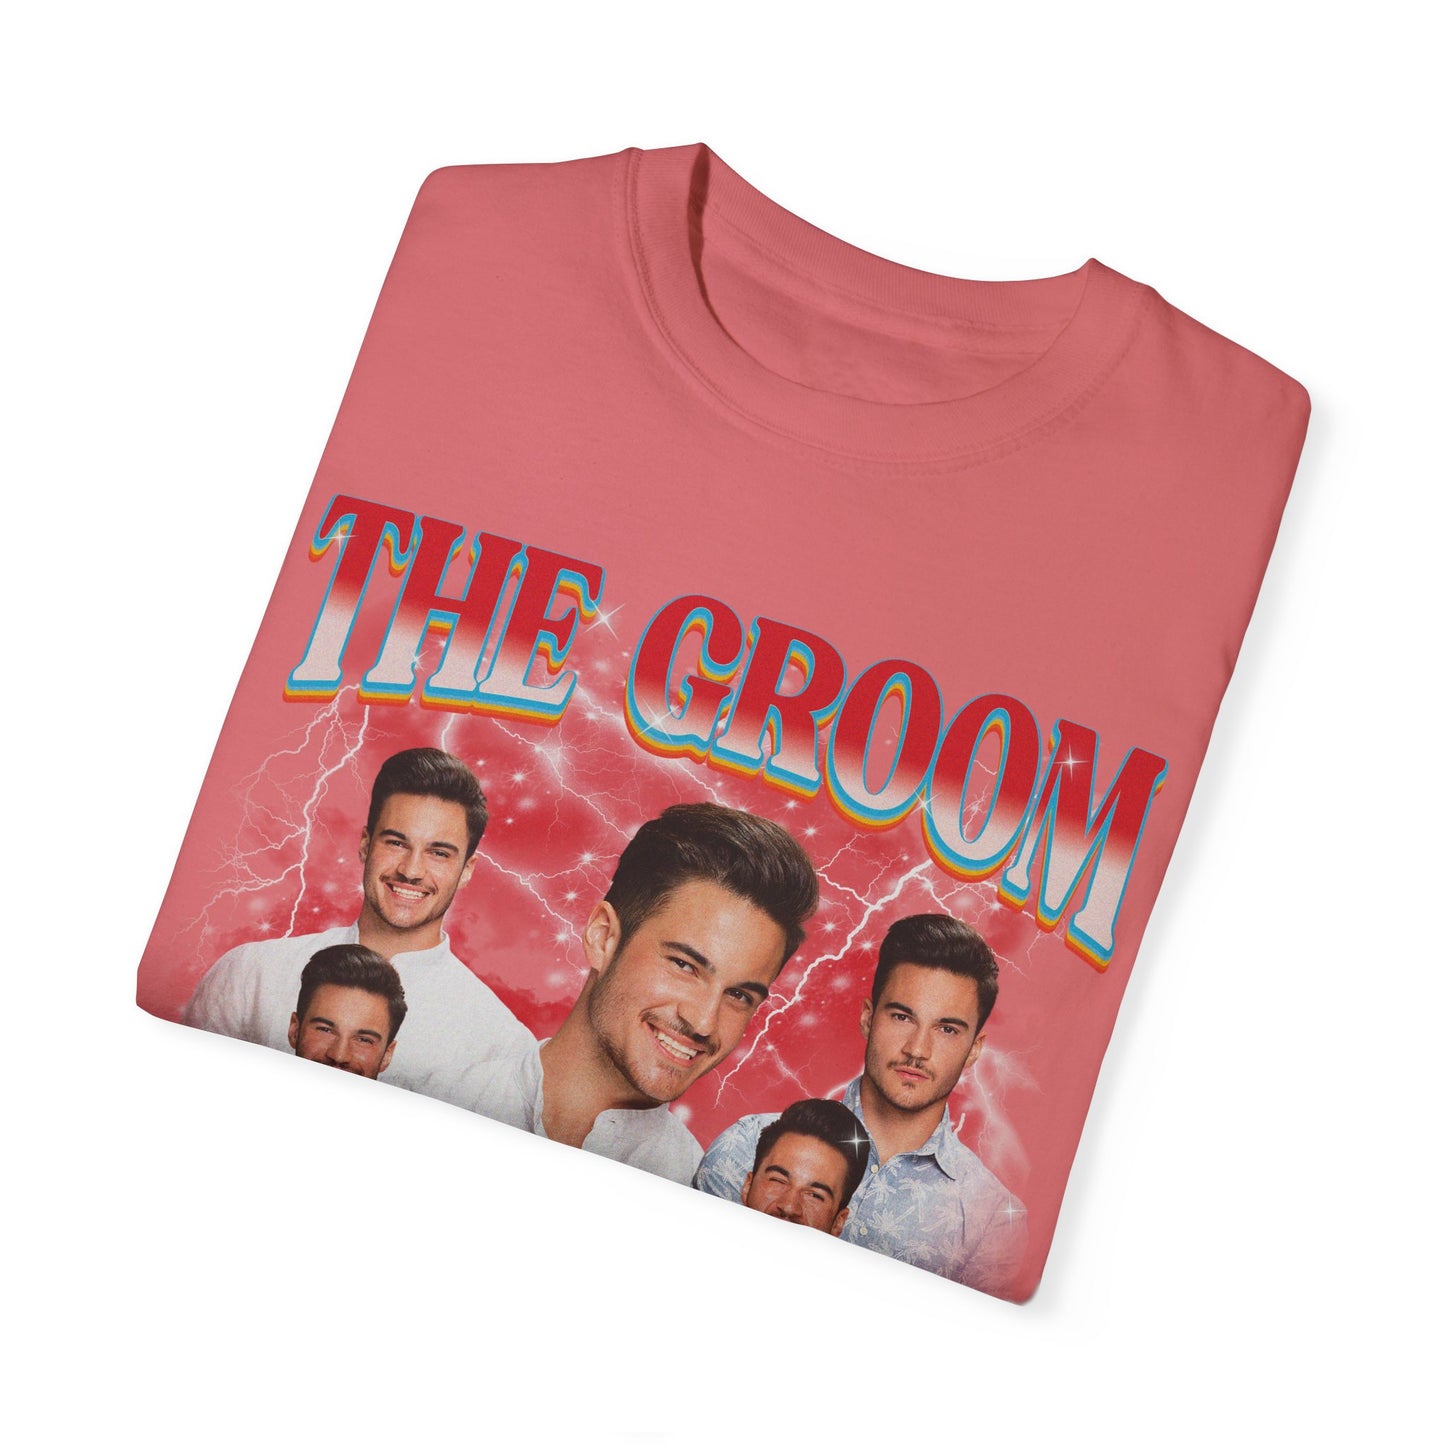 The Groom Bachelor Party Shirts, Groomsmen Shirts, Custom Bachelor Party Gifts, Funny Bachelor Shirts, Group Bachelor Shirts, CC1560